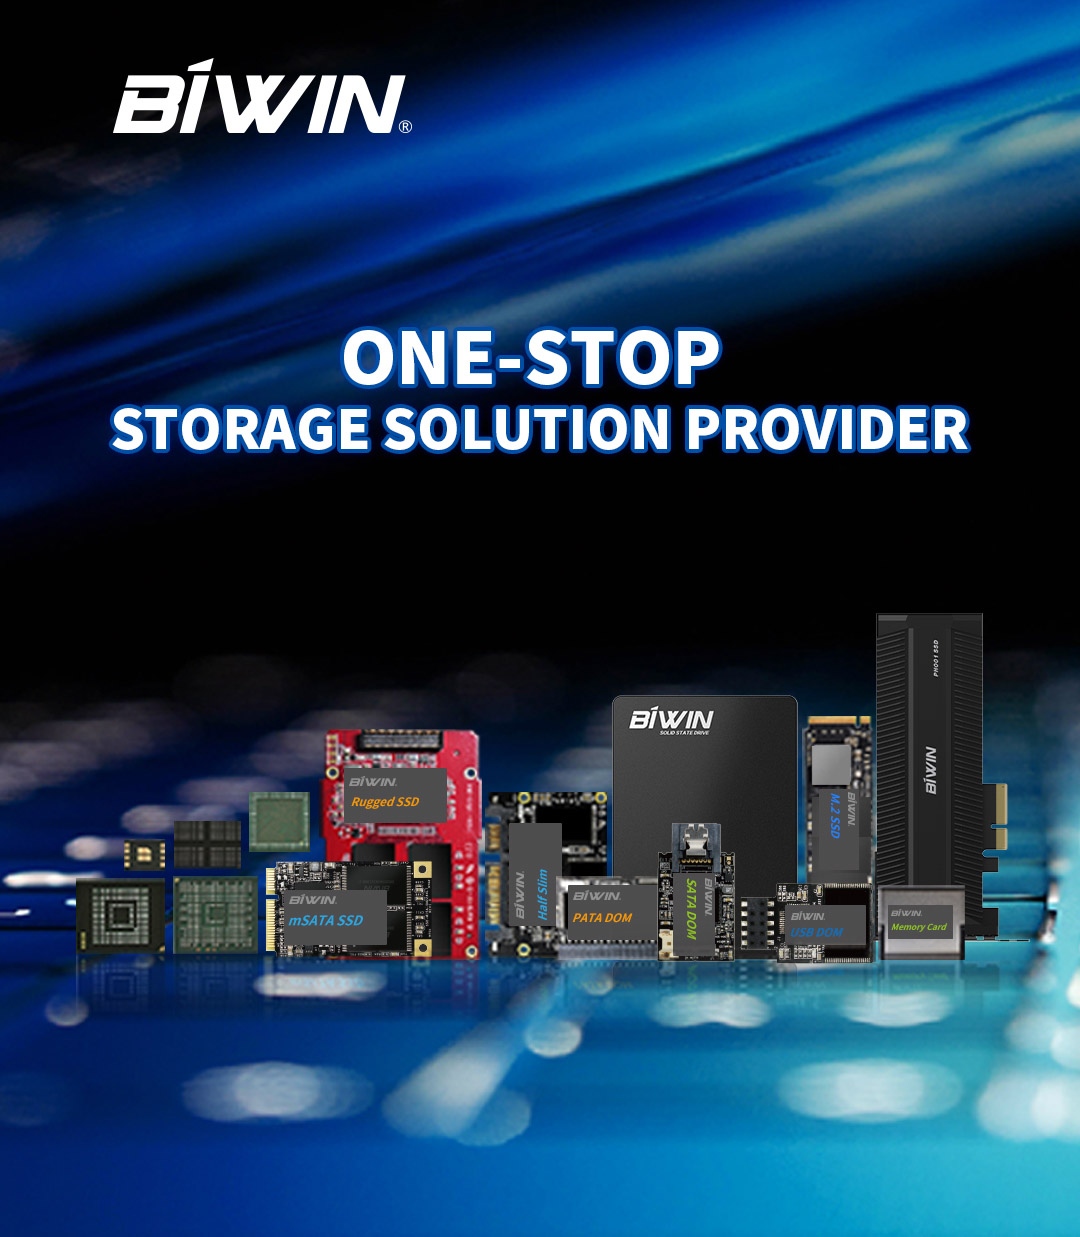 BIWIN Storage